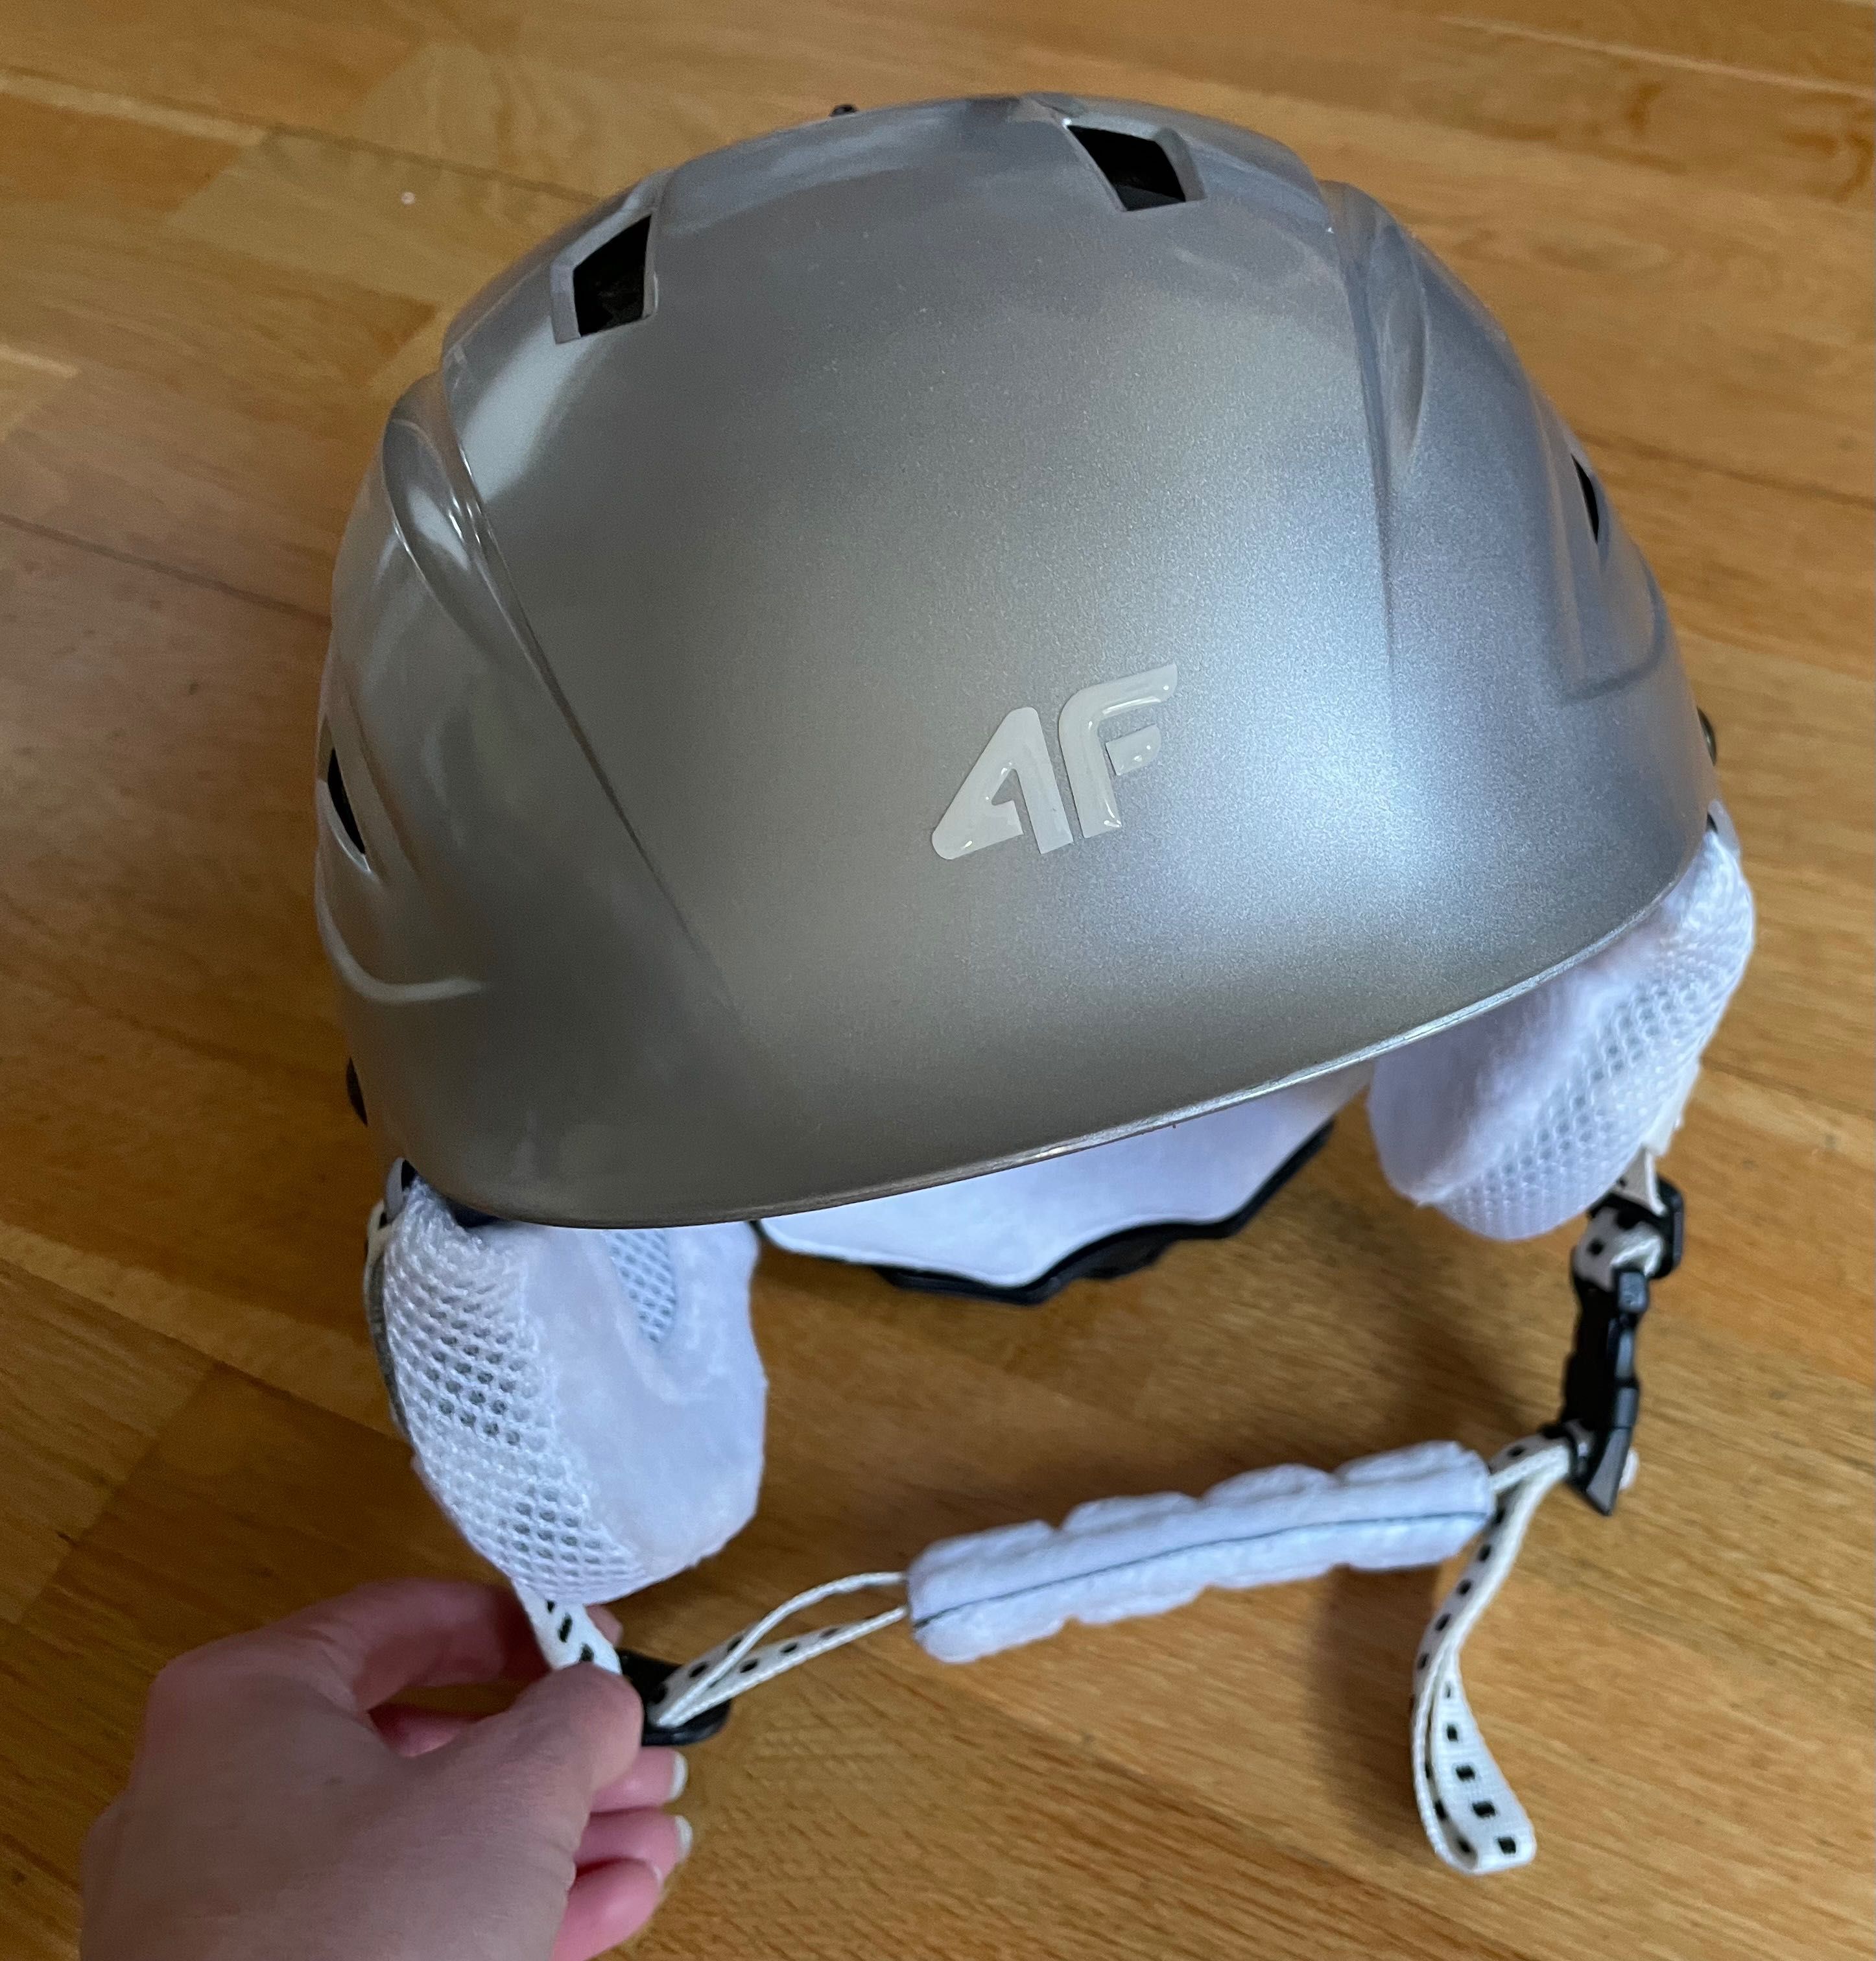 4F kask narciarski dziecięcy łyżwy srebrny szary S + gratis